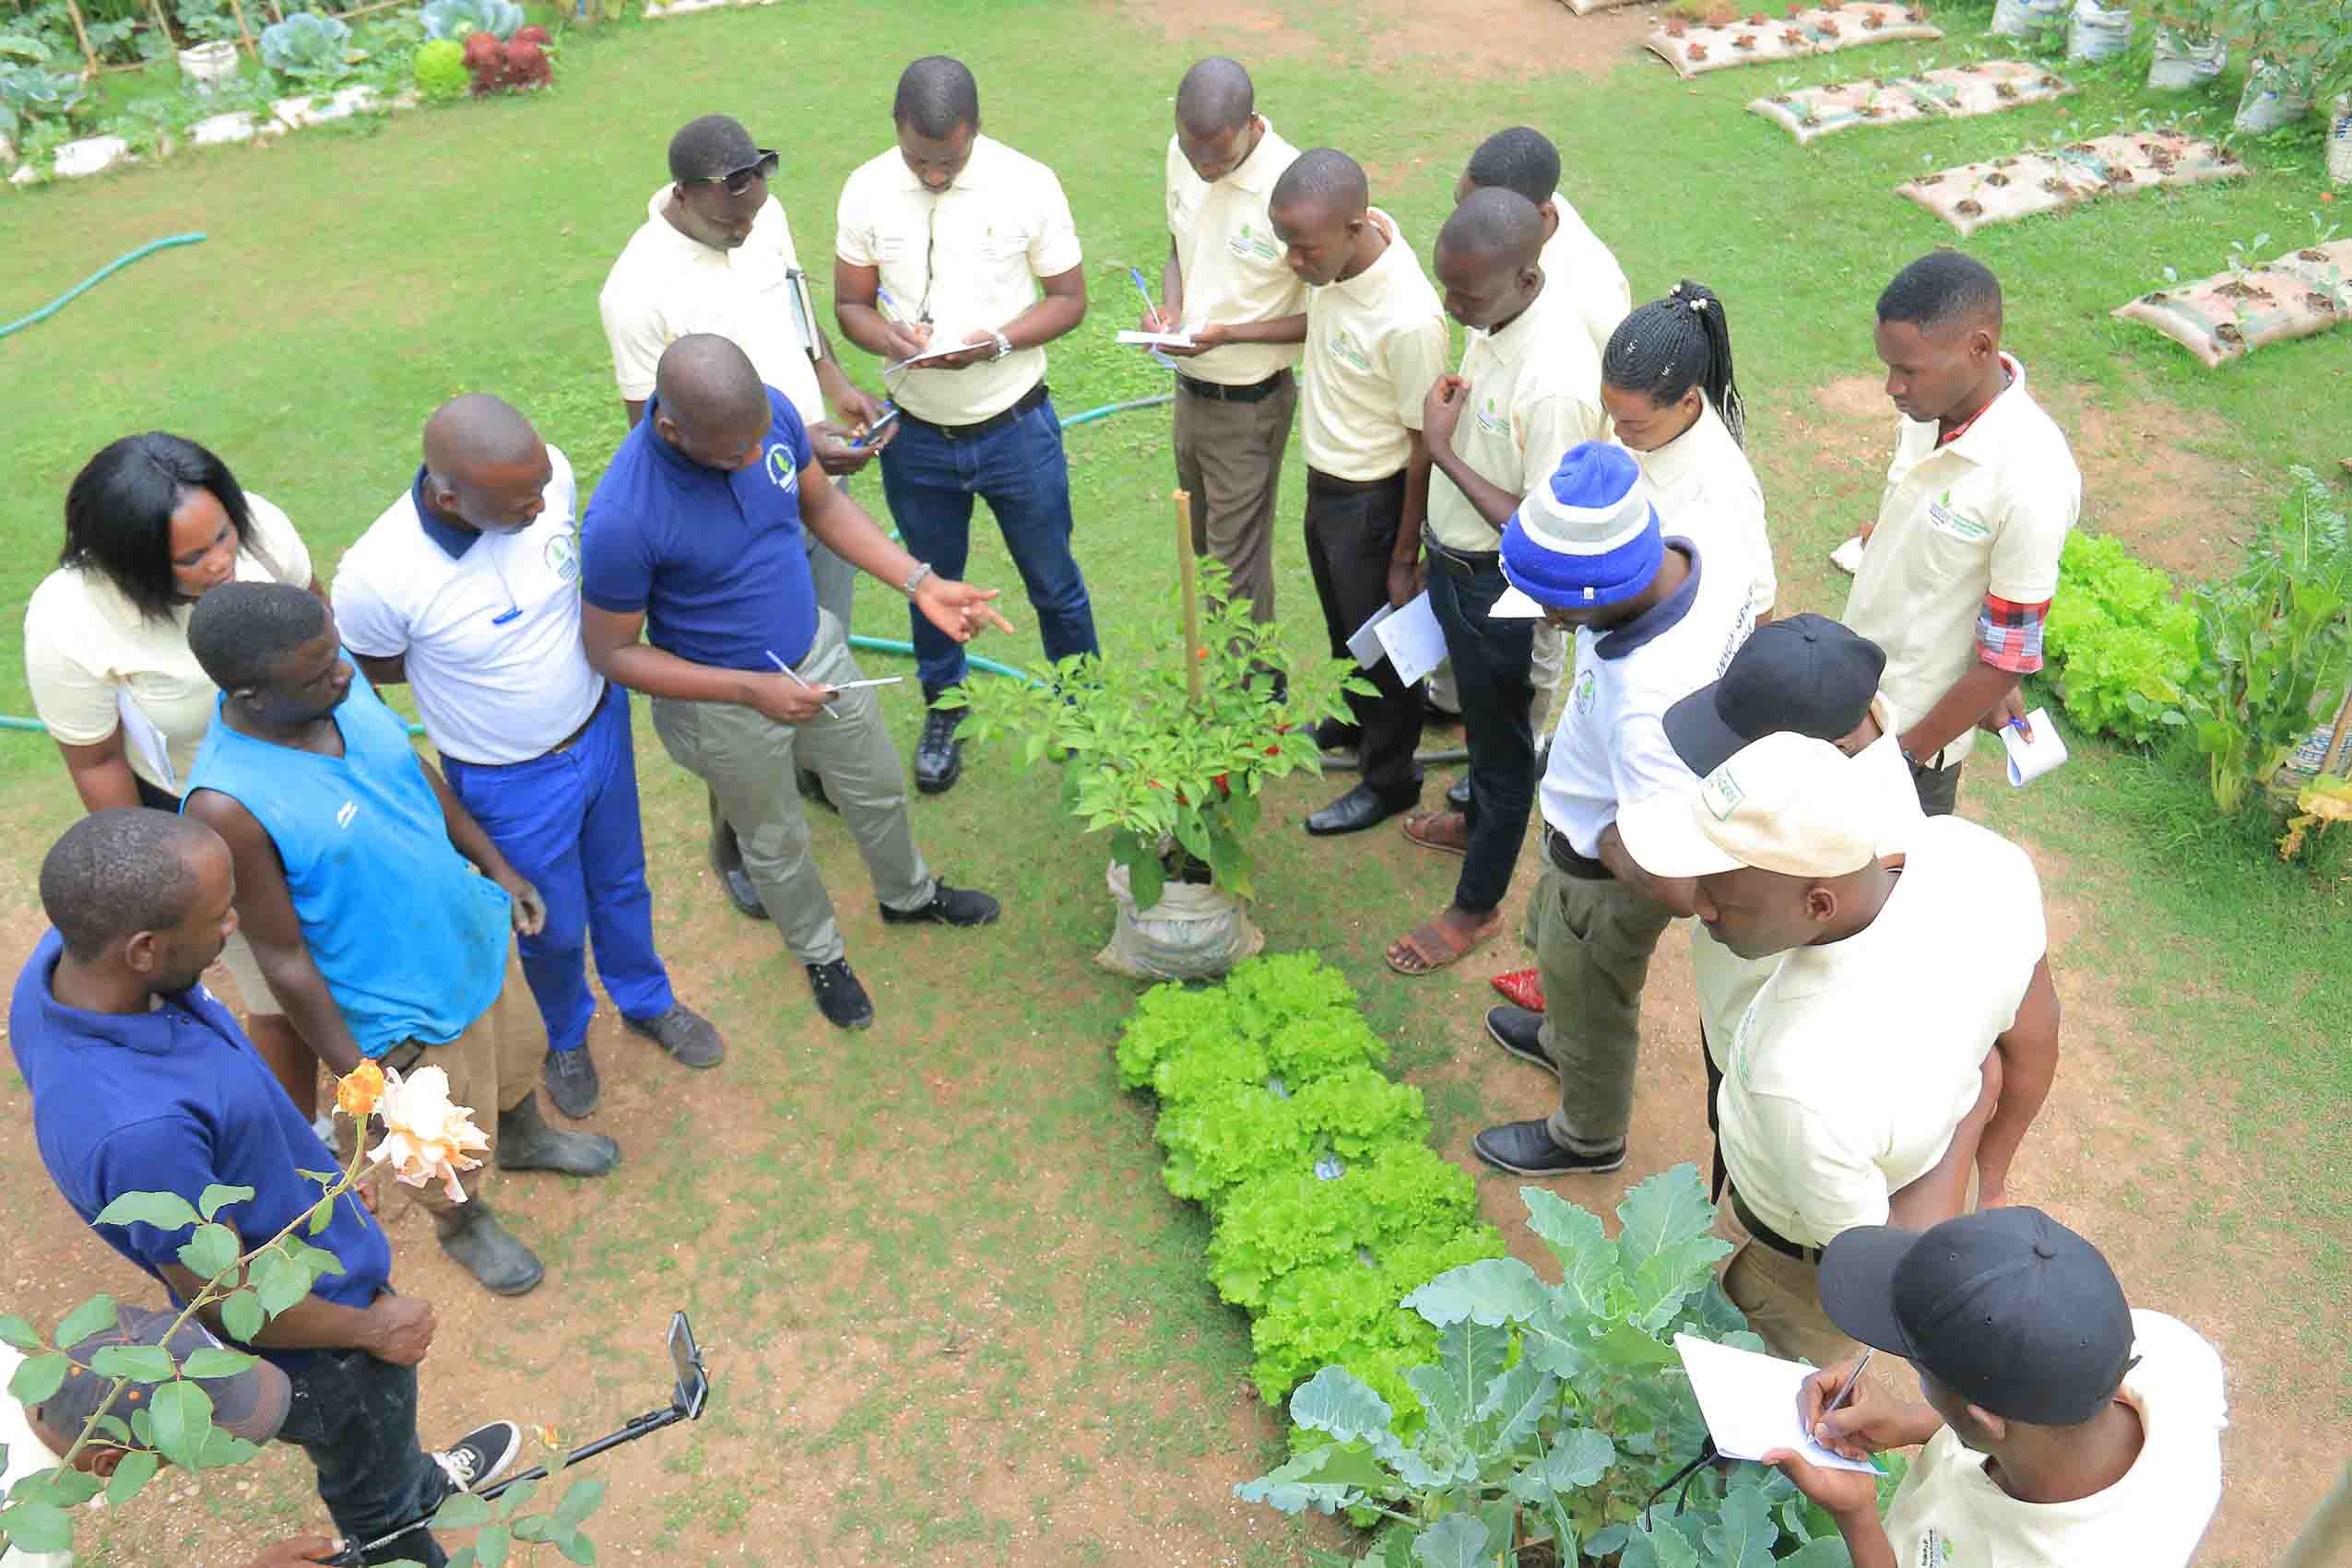 Training on Establishing and Strengthening Farmer Organizations, Nairobi, Kenya